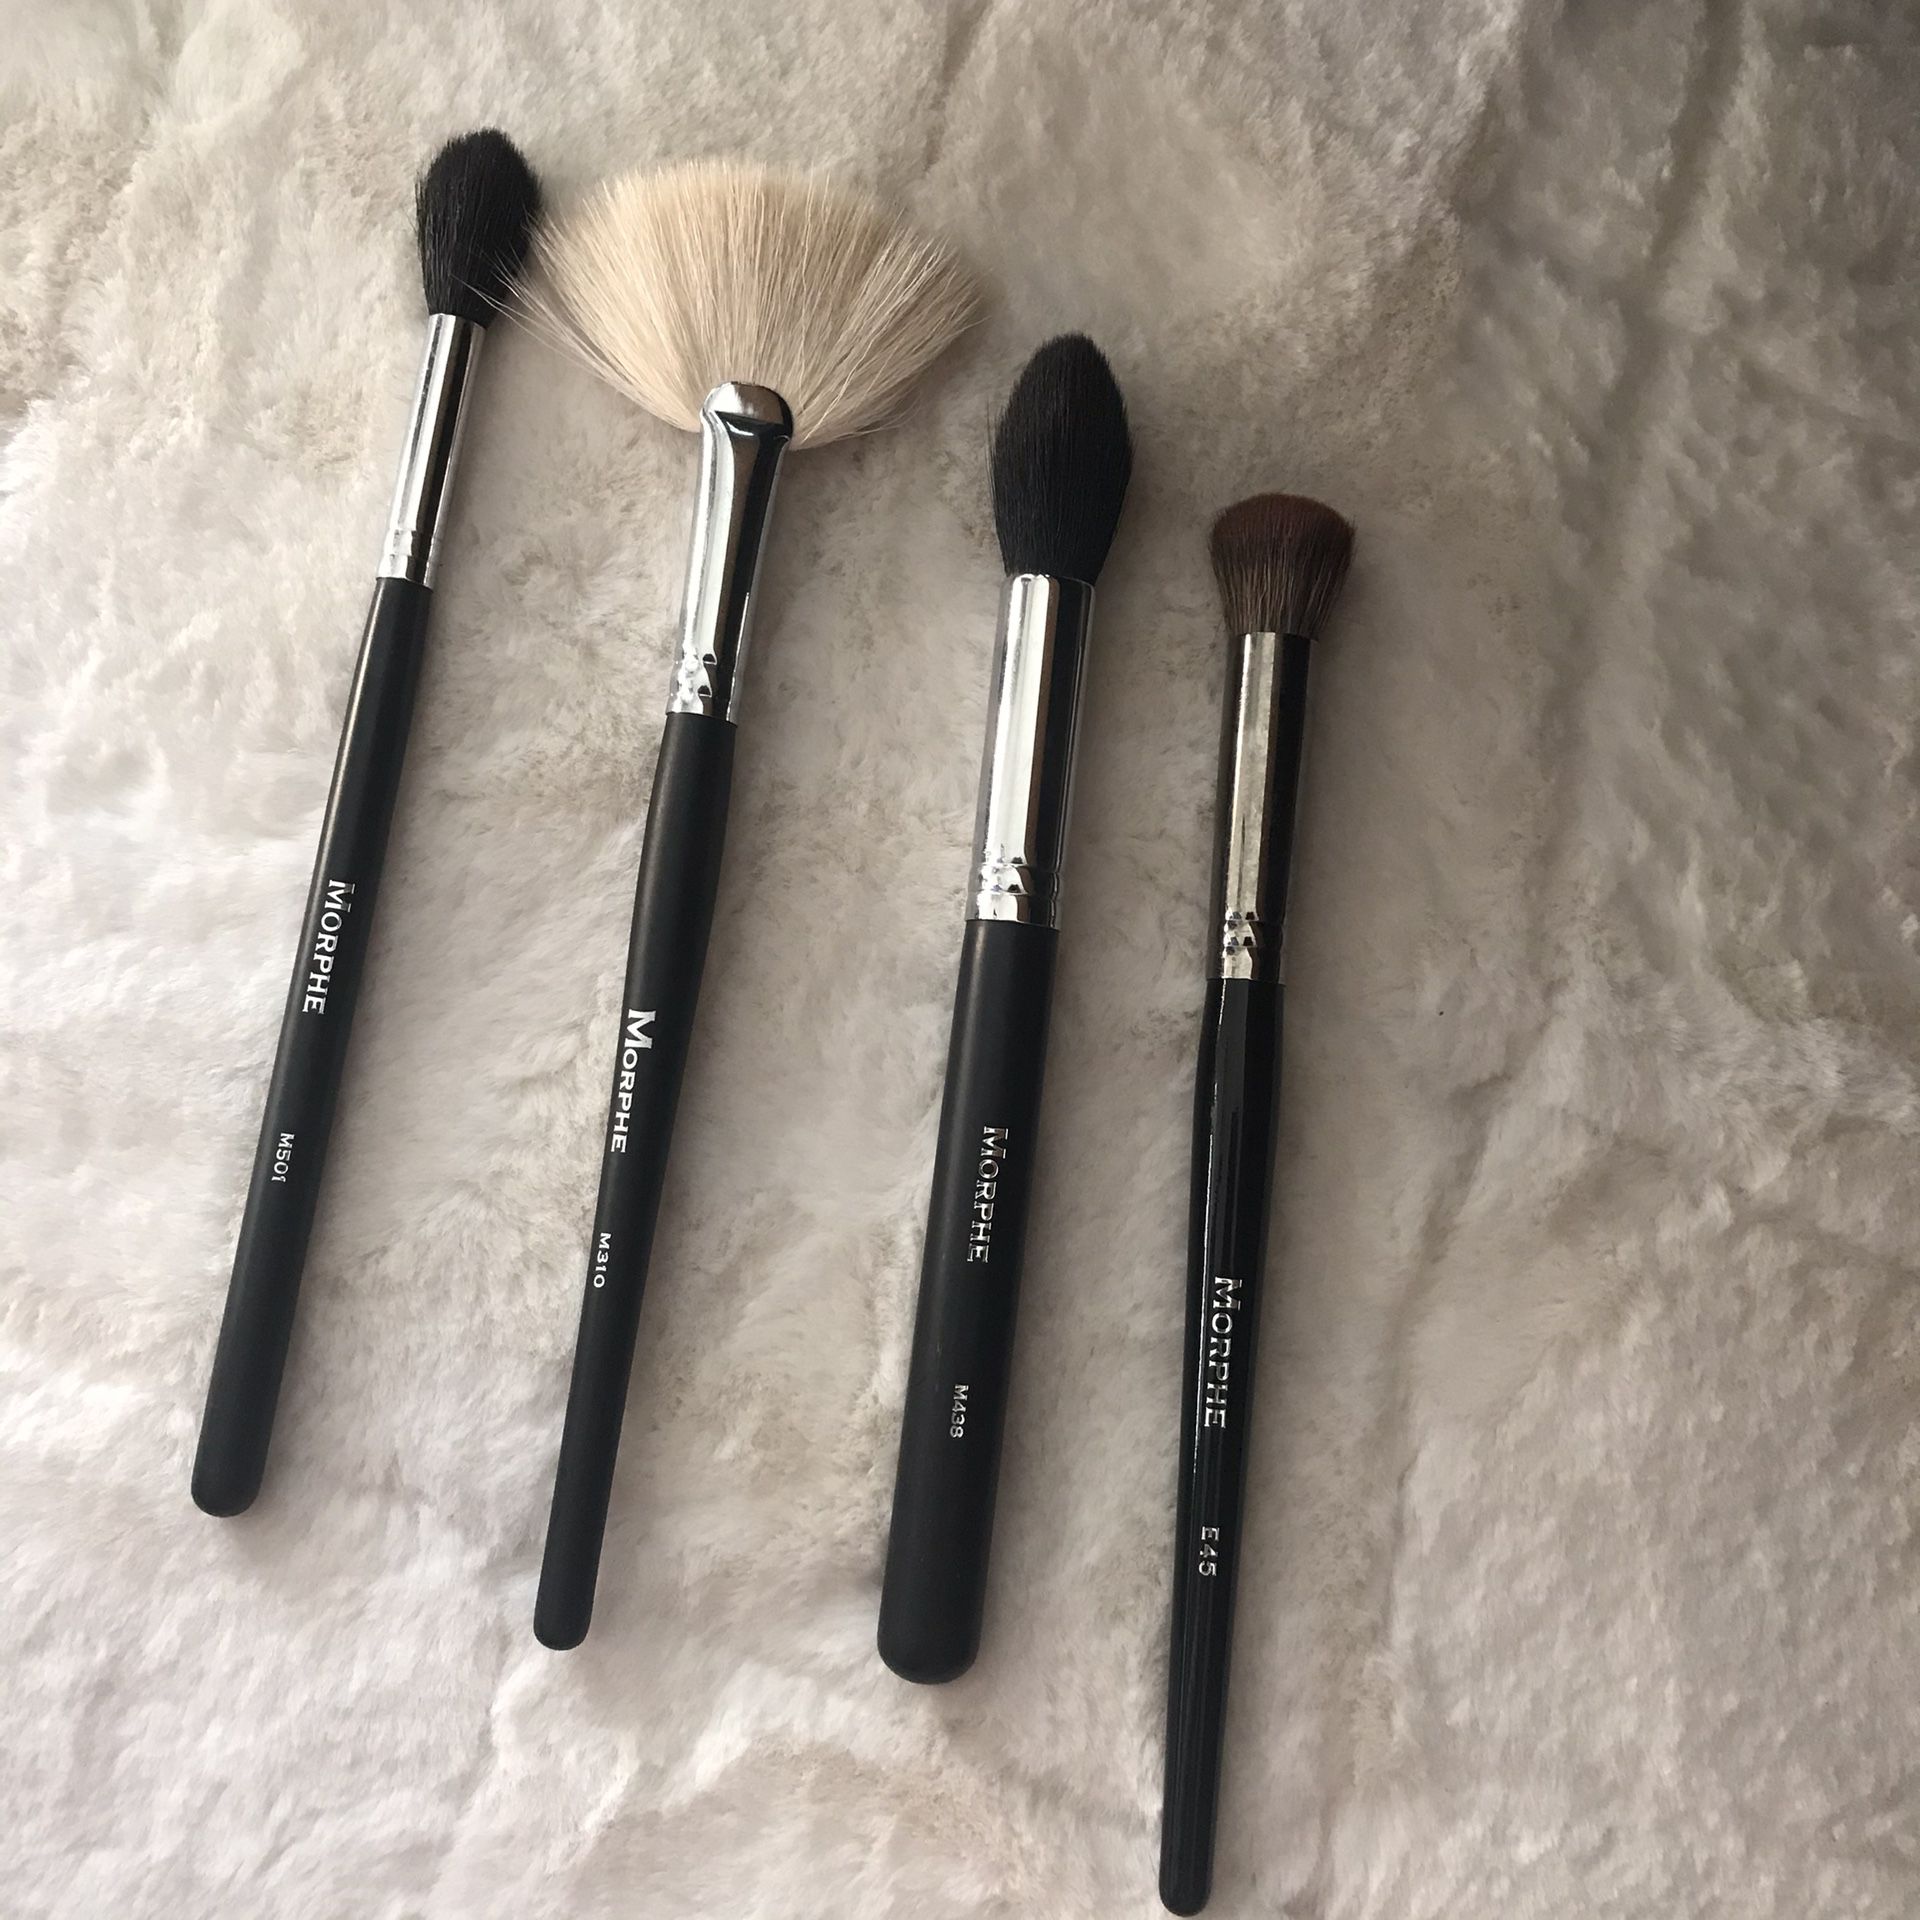 Morphe makeup brush kit